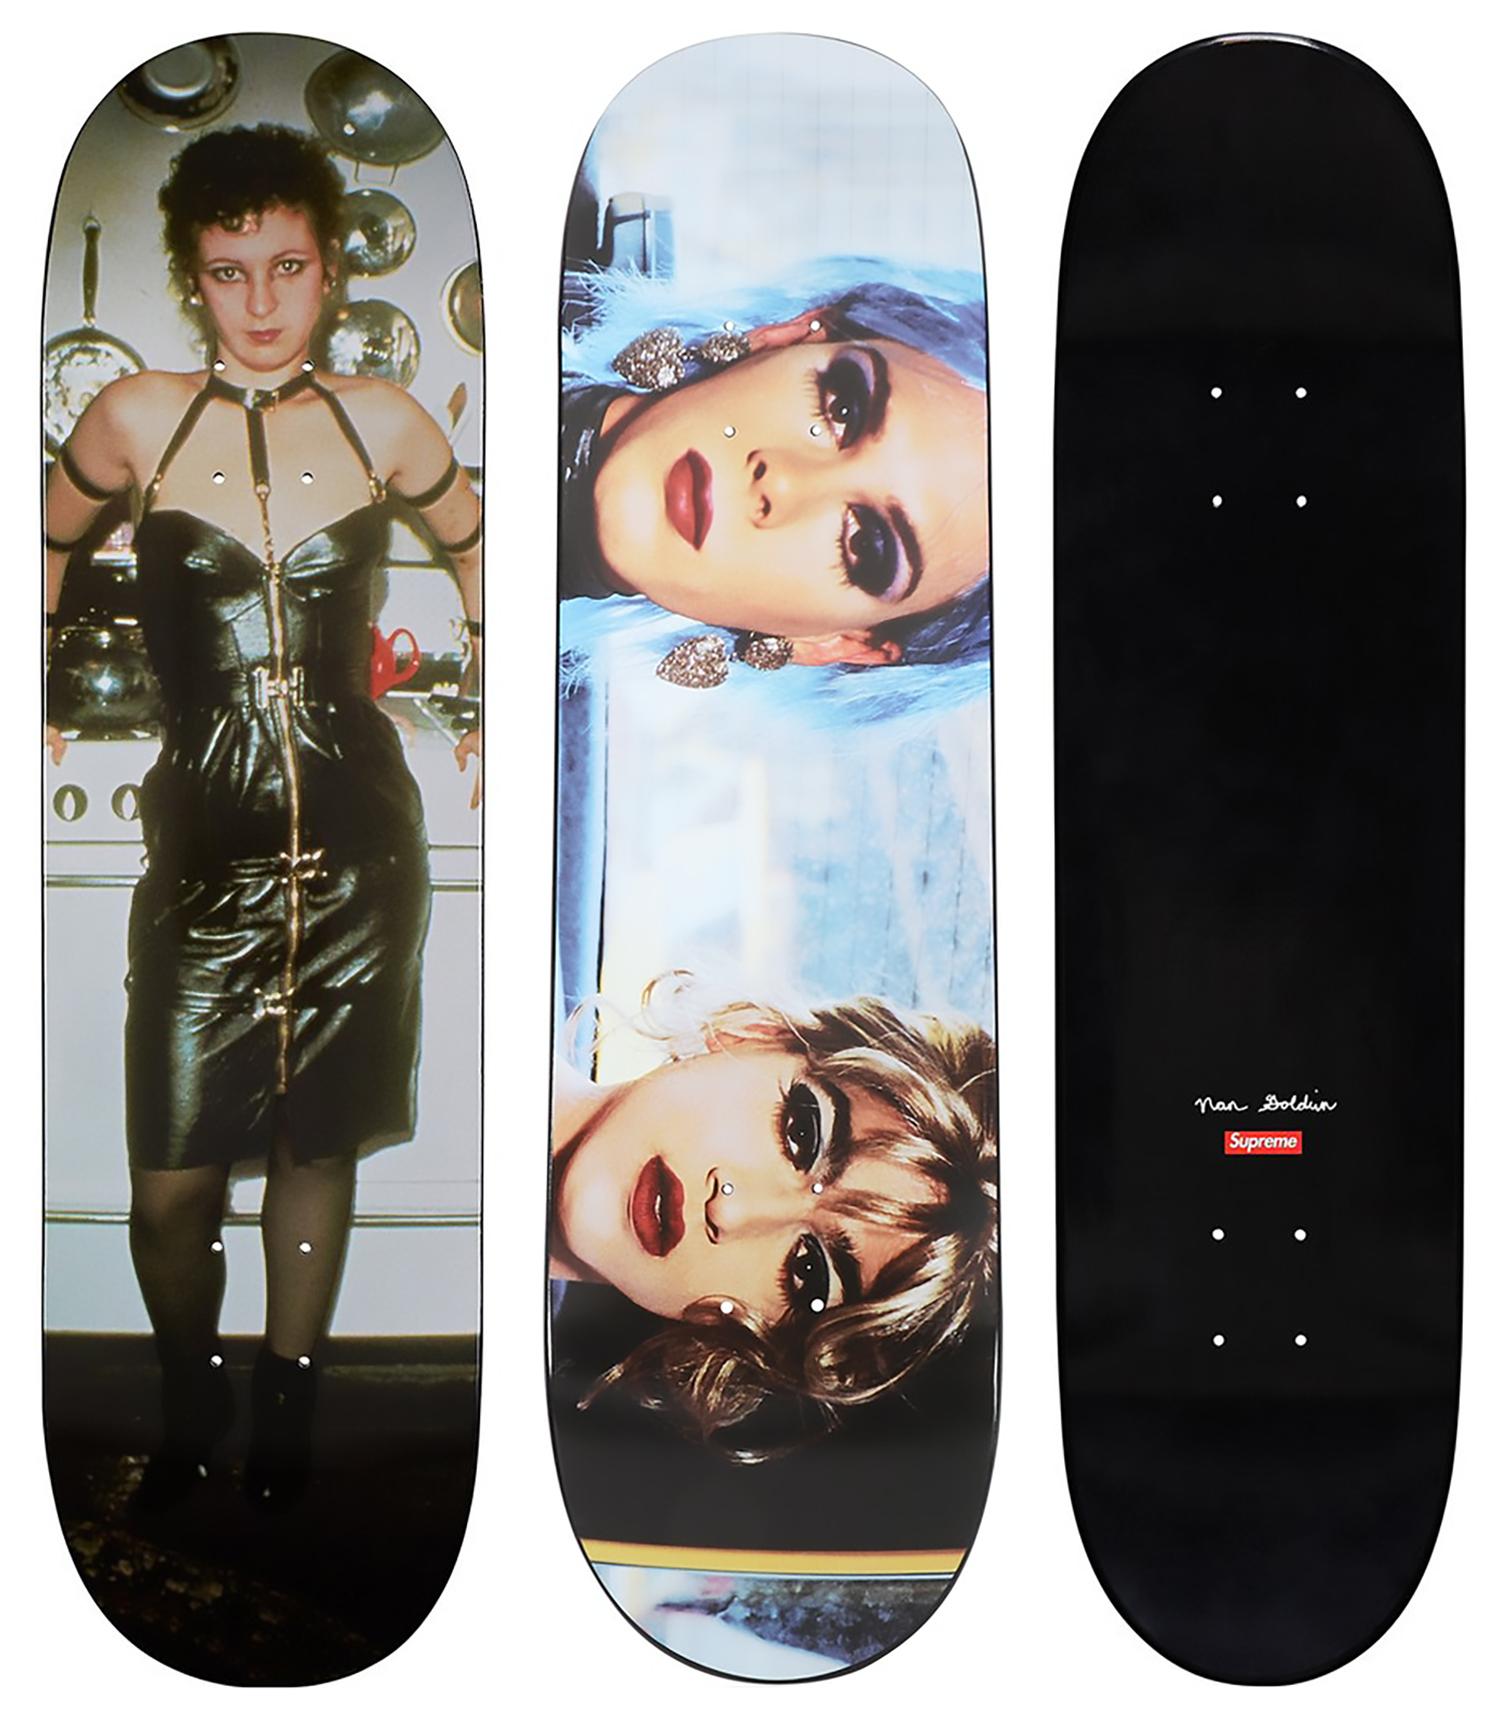 Supreme Nan Goldin skateboard decks (set of 2 works)